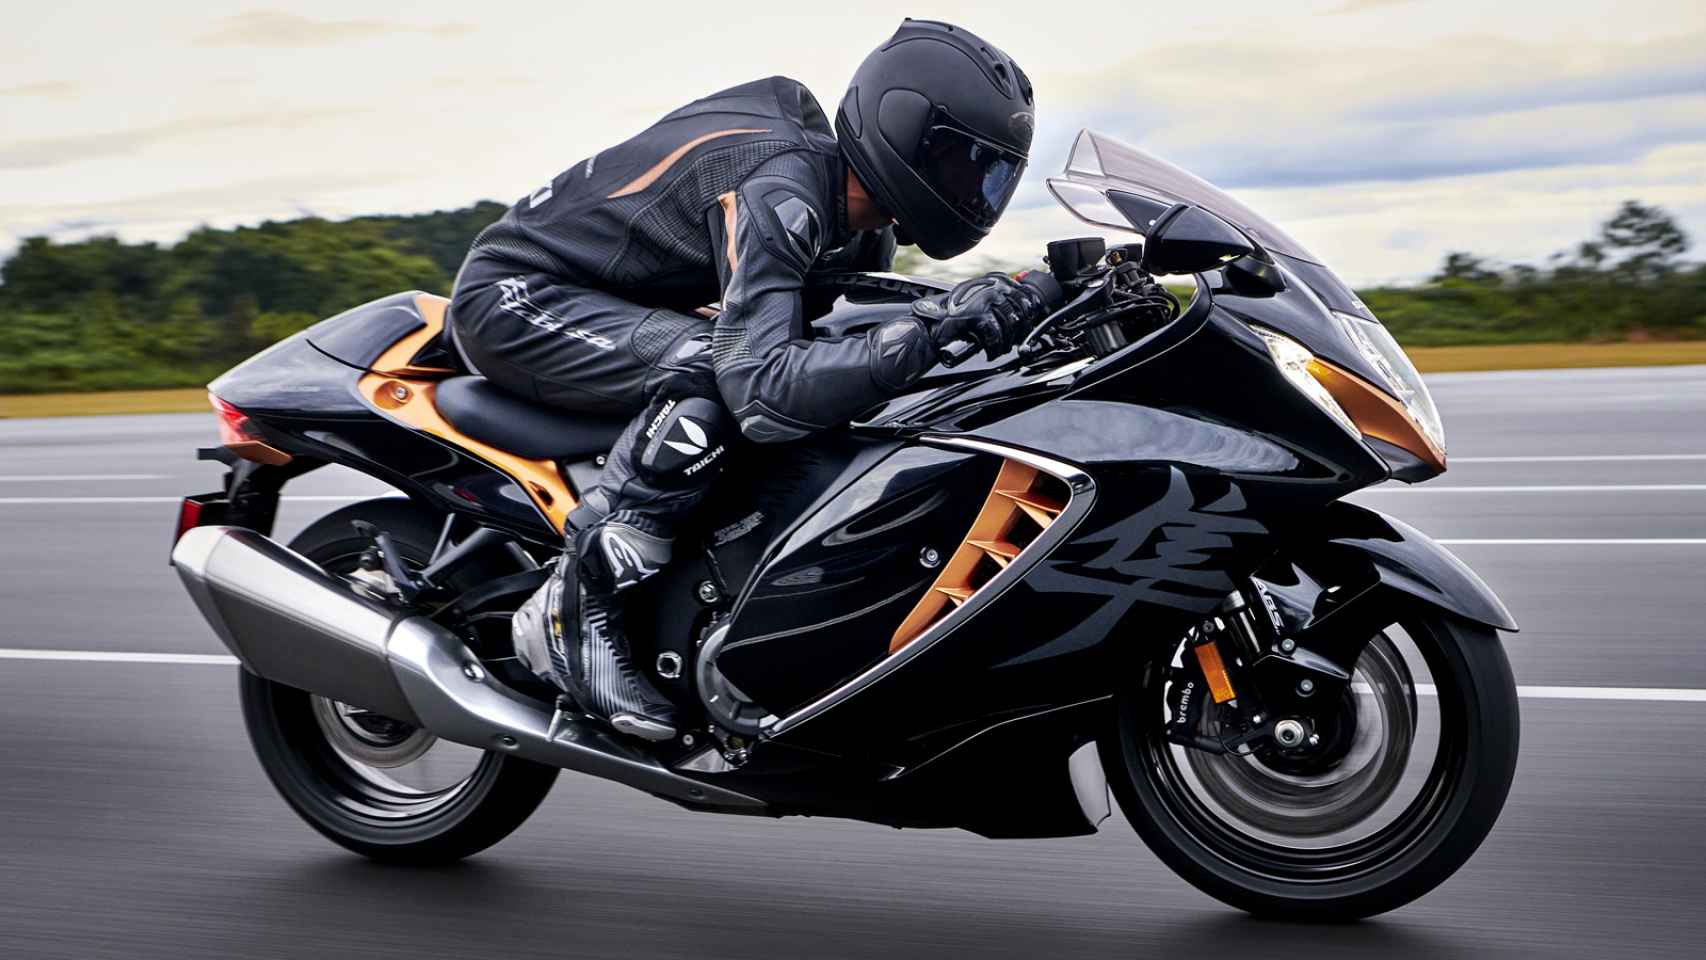 Vuelve la Suzuki Hayabusa, la moto de los 300 km/h de velocidad máxima